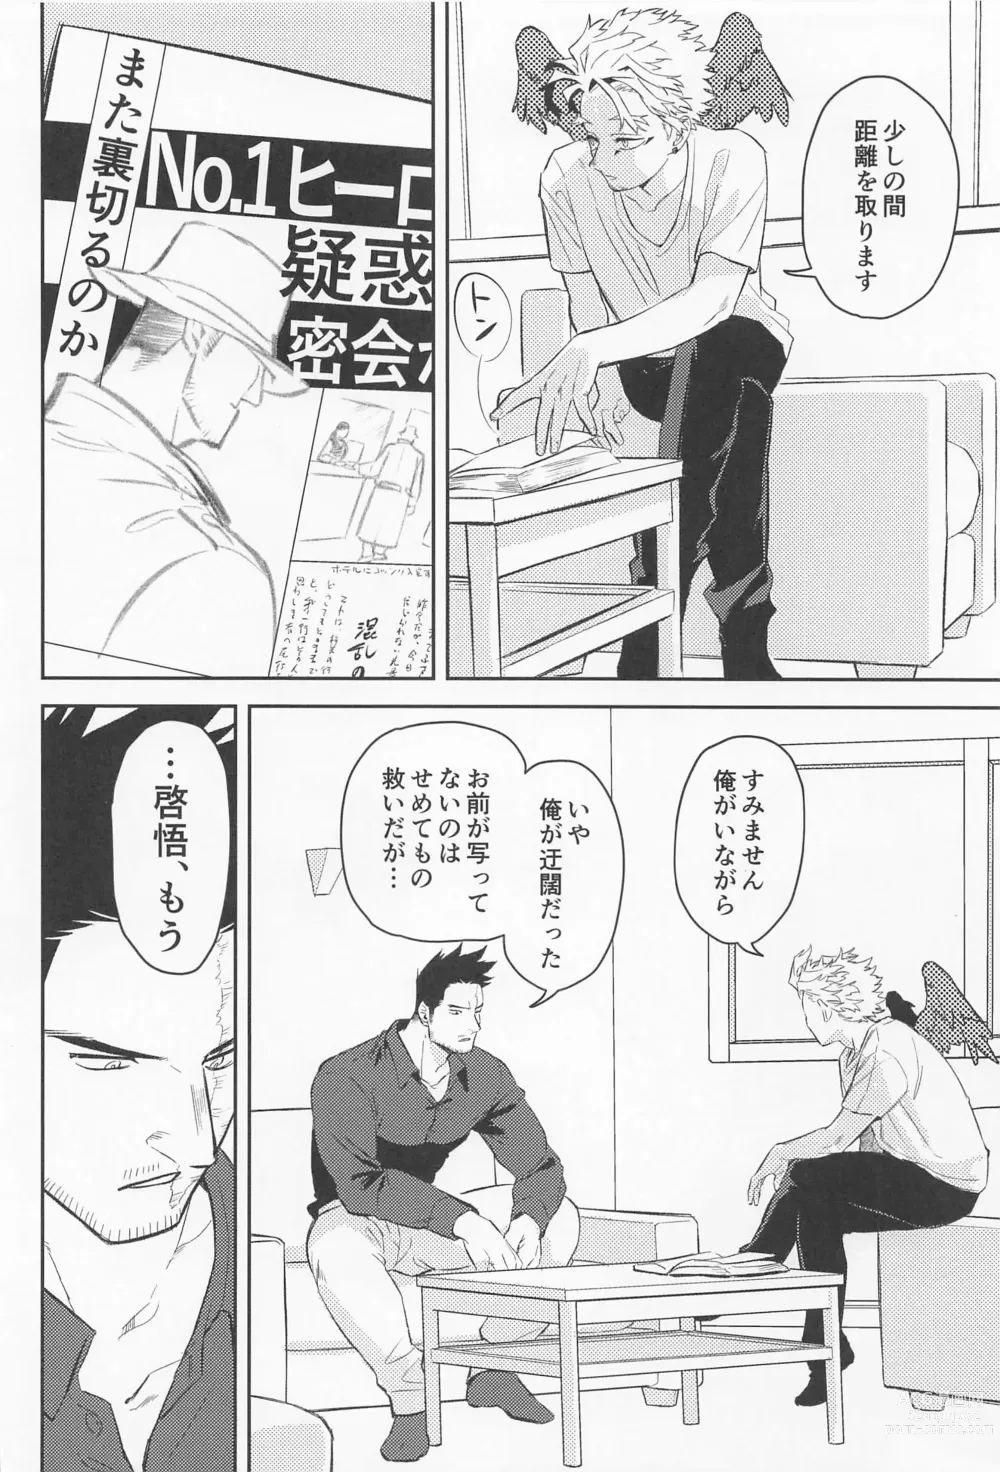 Page 3 of doujinshi Soredemo Aishitai